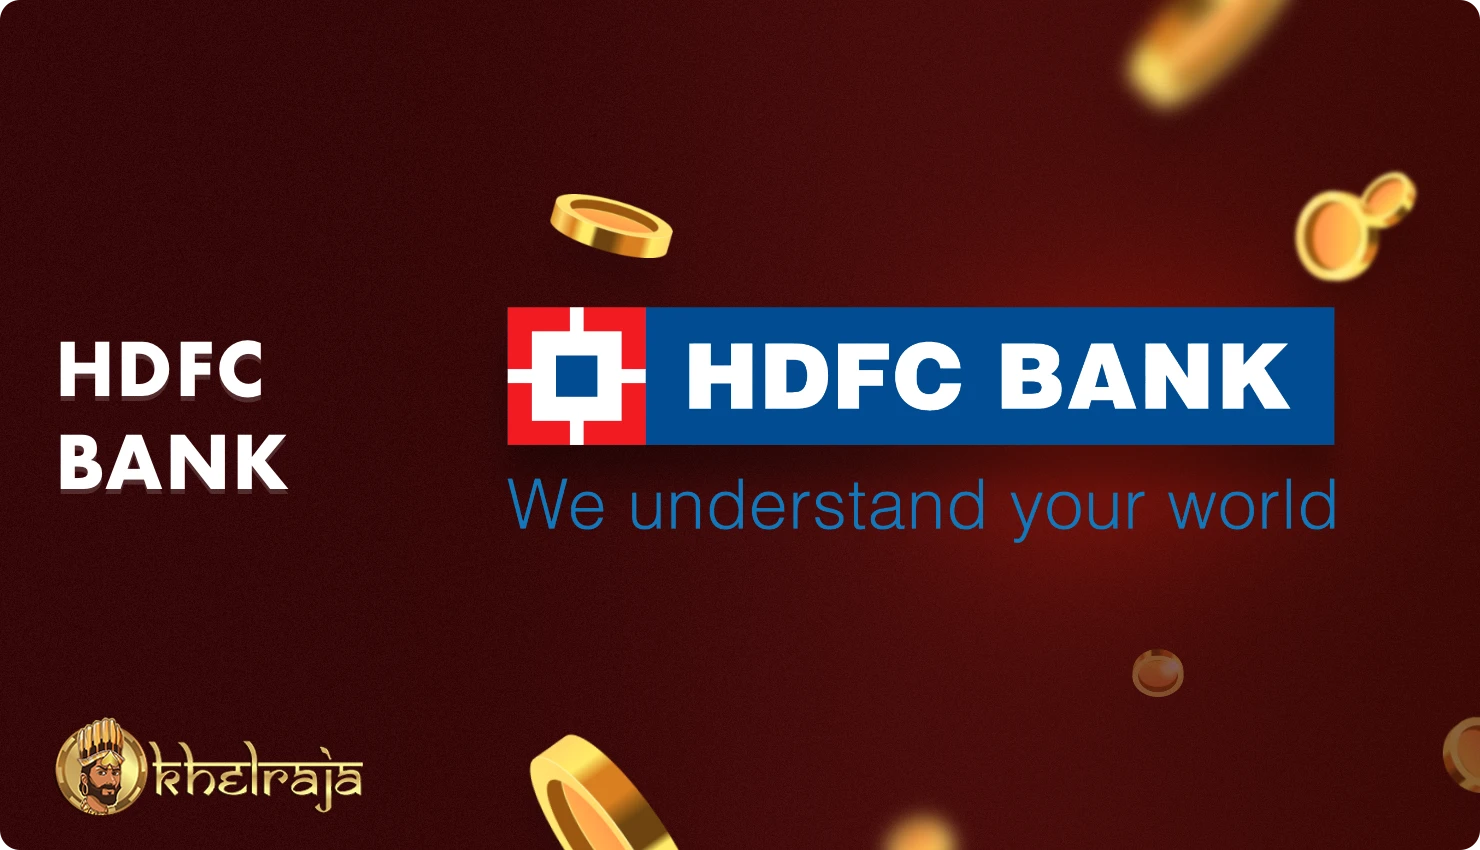 Khelraja एचडीएफसी बैंक के माध्यम से धनराशि जमा करने और निकालने का अवसर प्रदान करता है